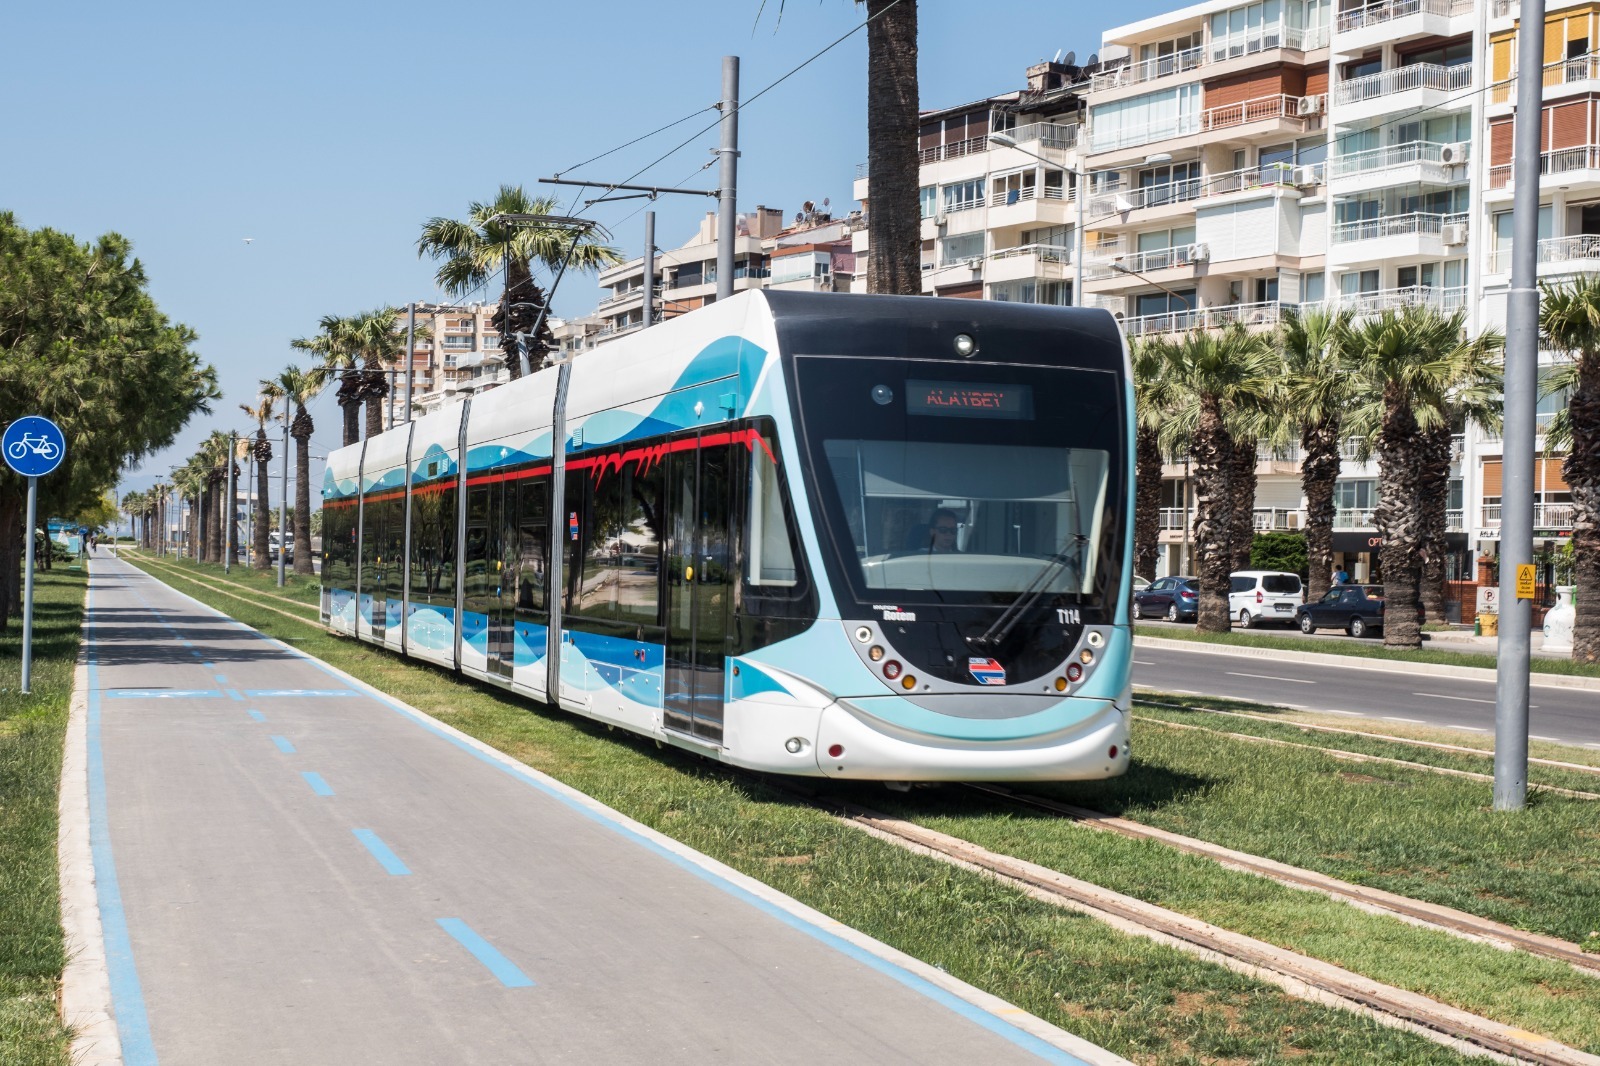 Proje ihalesi 20 Ağustos’ta, Örnekköy’e de tramvay hattı geliyor